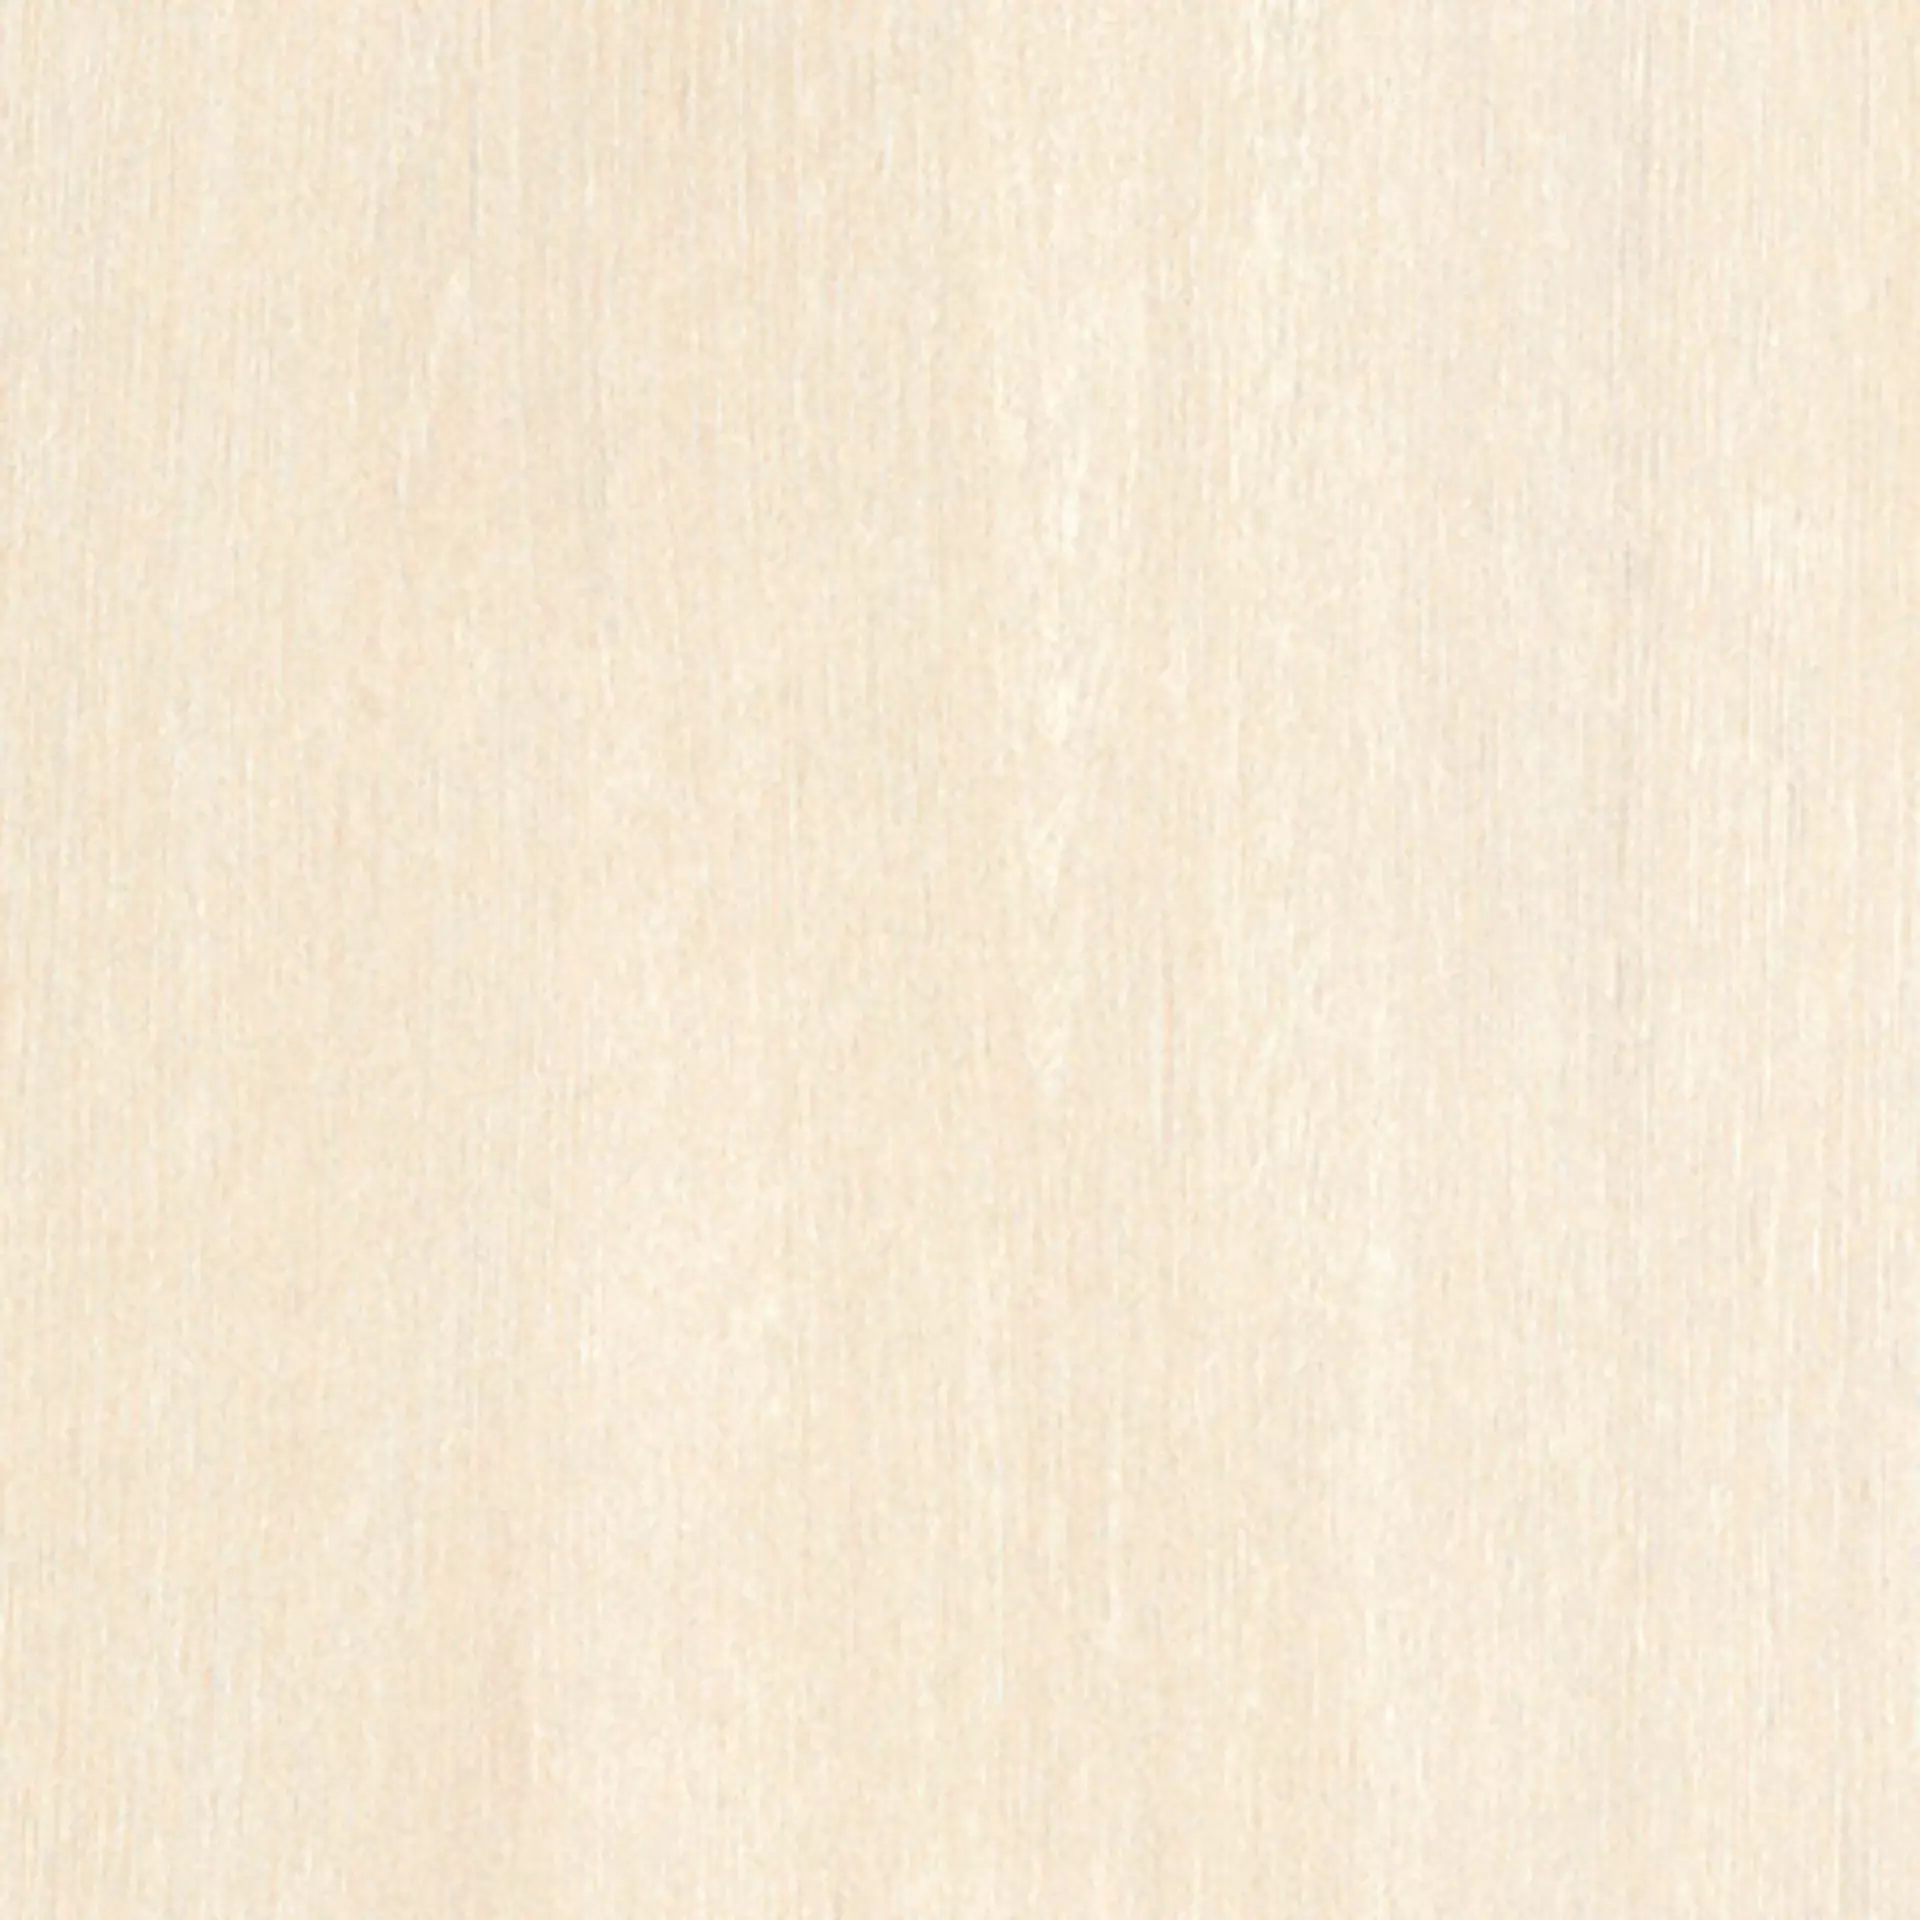 Casalgrande Planks Beige Naturale – Matt 10060083 20x240cm rectified 6mm